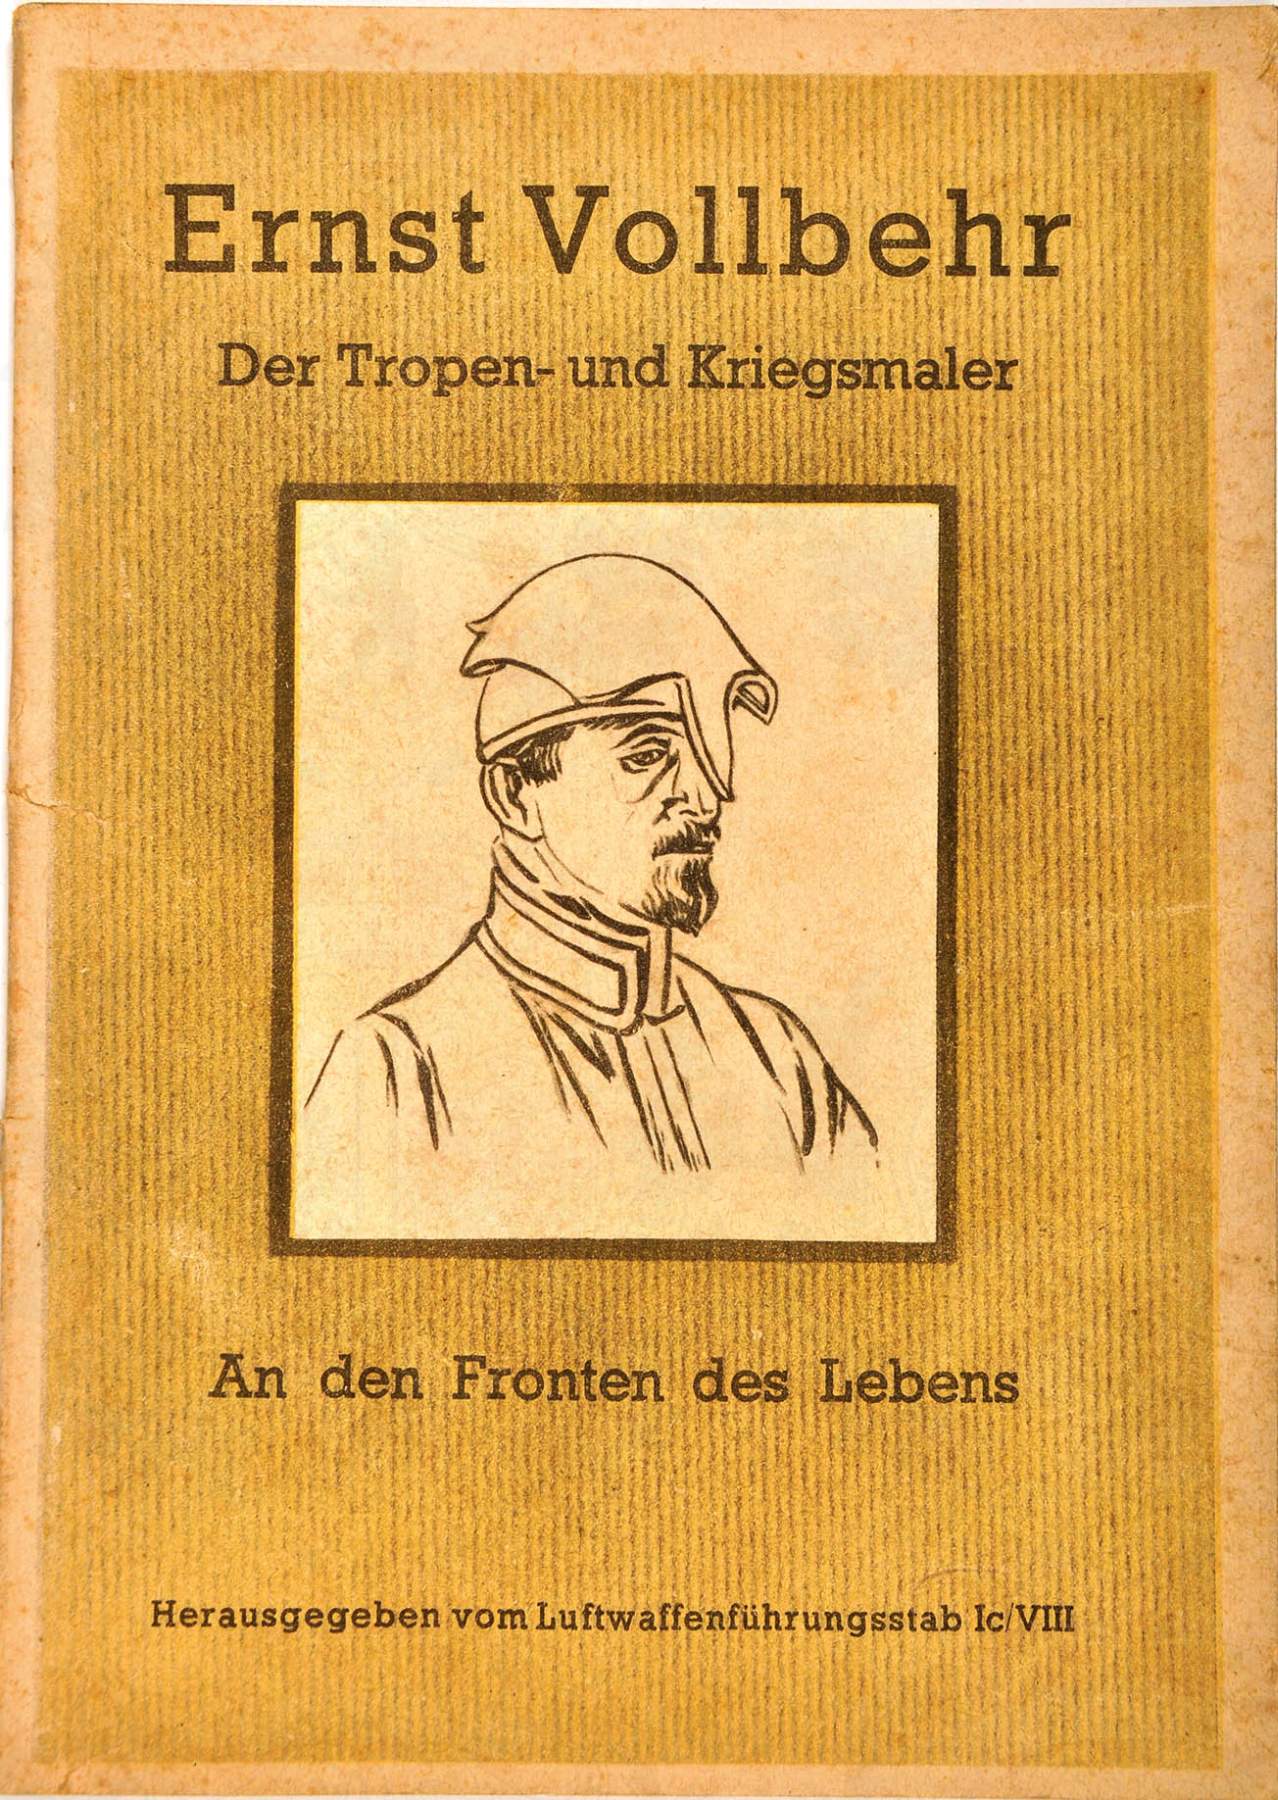 ERNST VOLLBEHR, "Der Tropen- u. Kriegsmaler", Tagebuchaufzeichn., Hrsg.: LW-Führungsstab, um 1941,